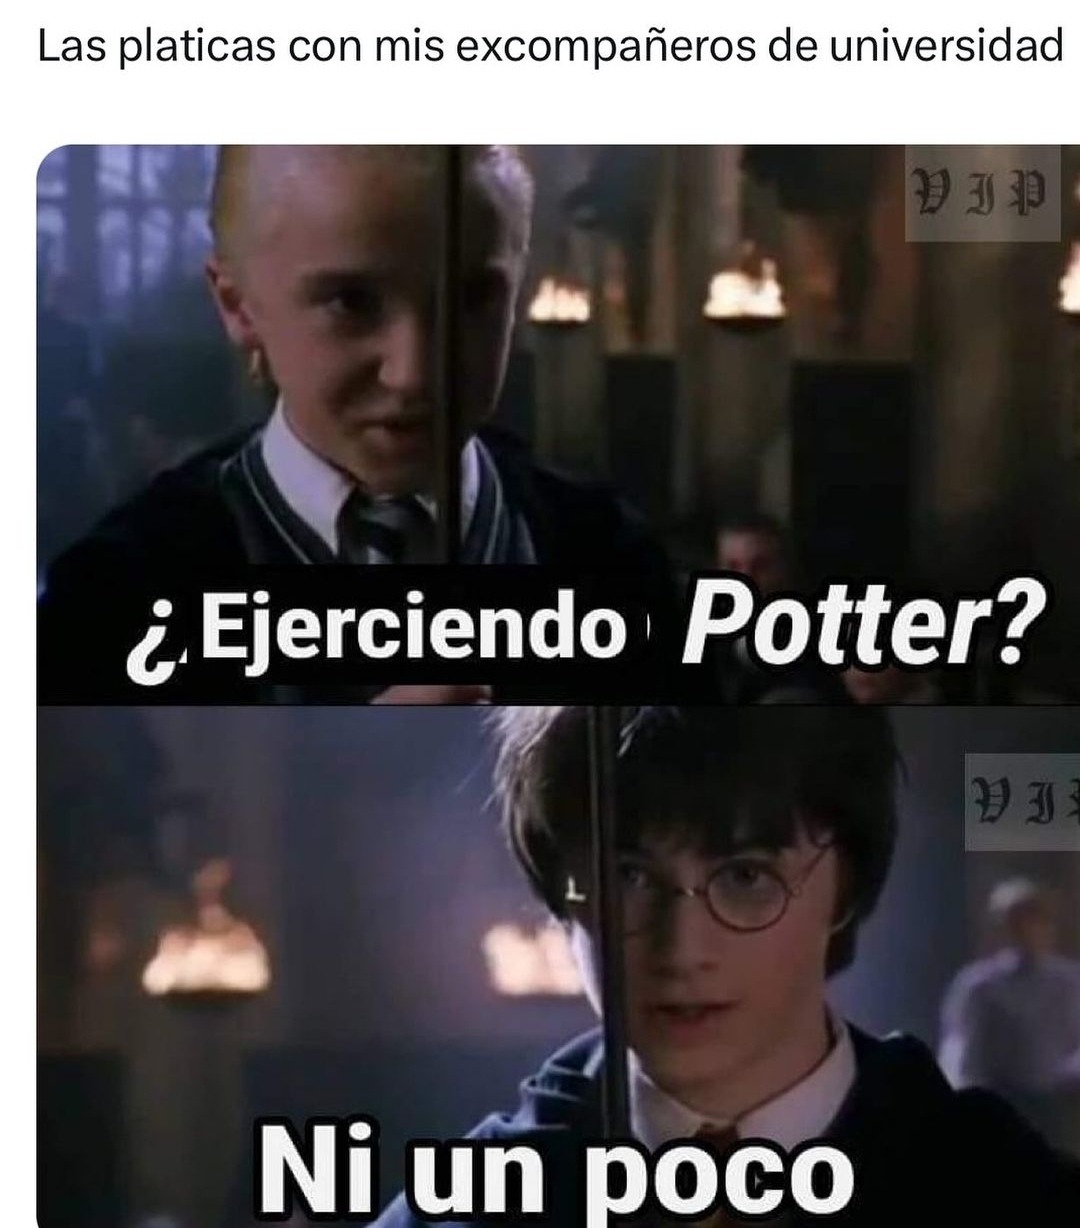 Ejerciendo Potter? - meme